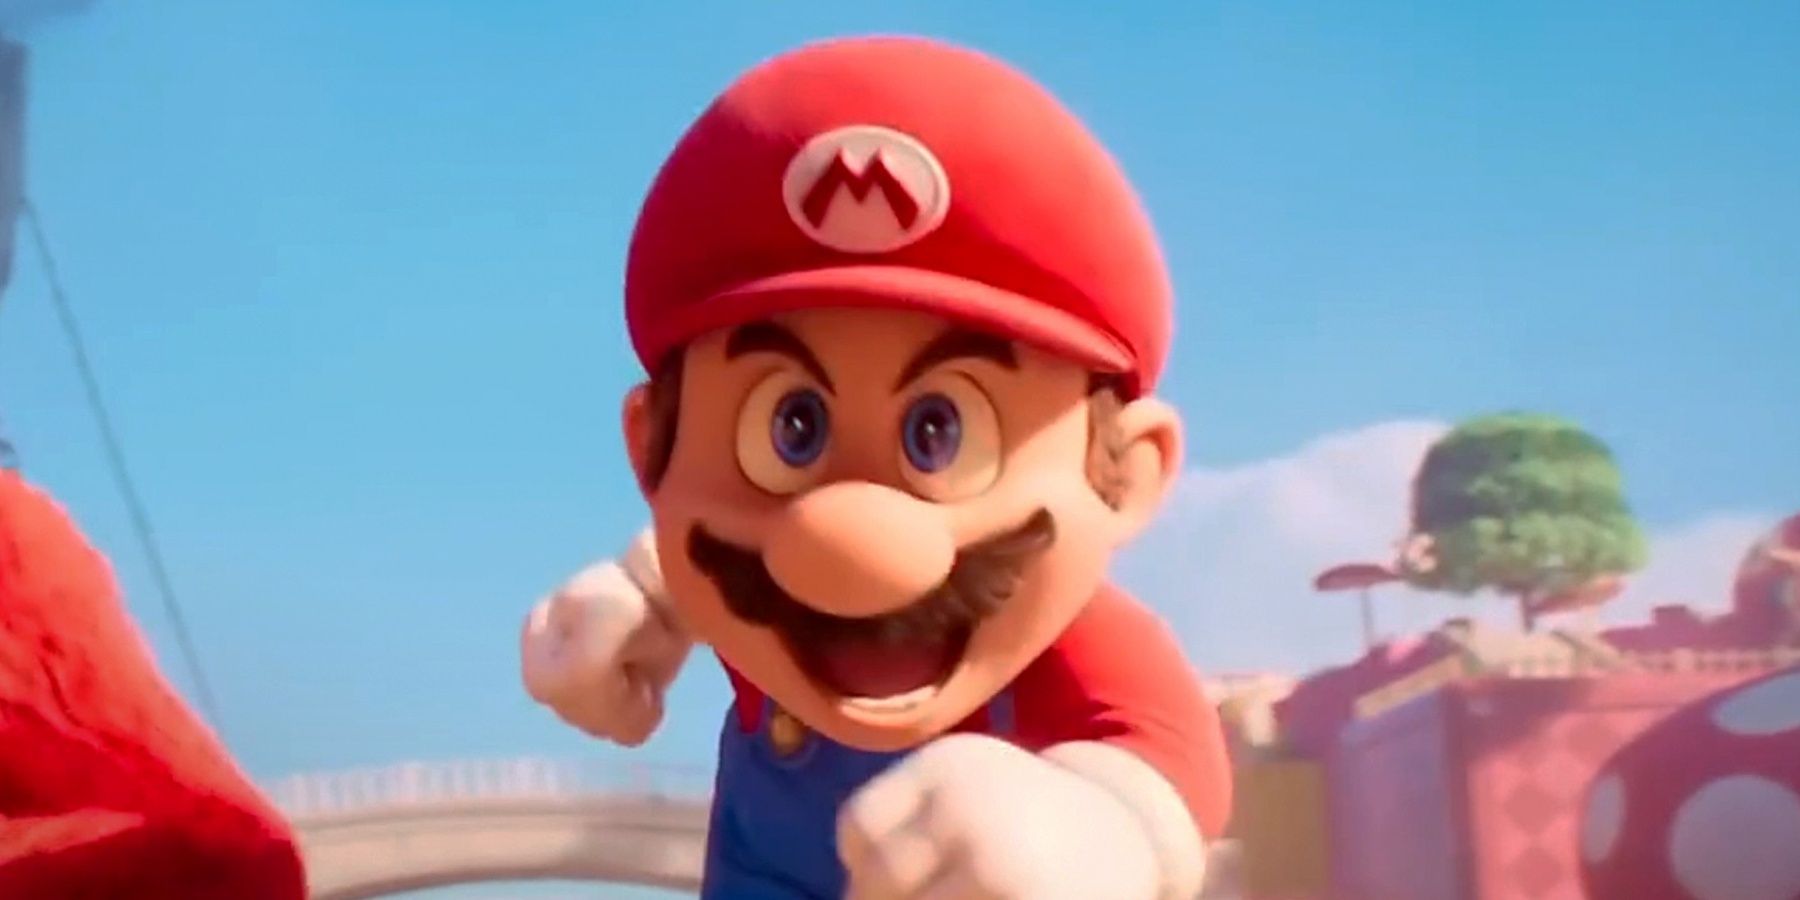 Mario running in the Super Mario Bros. movie